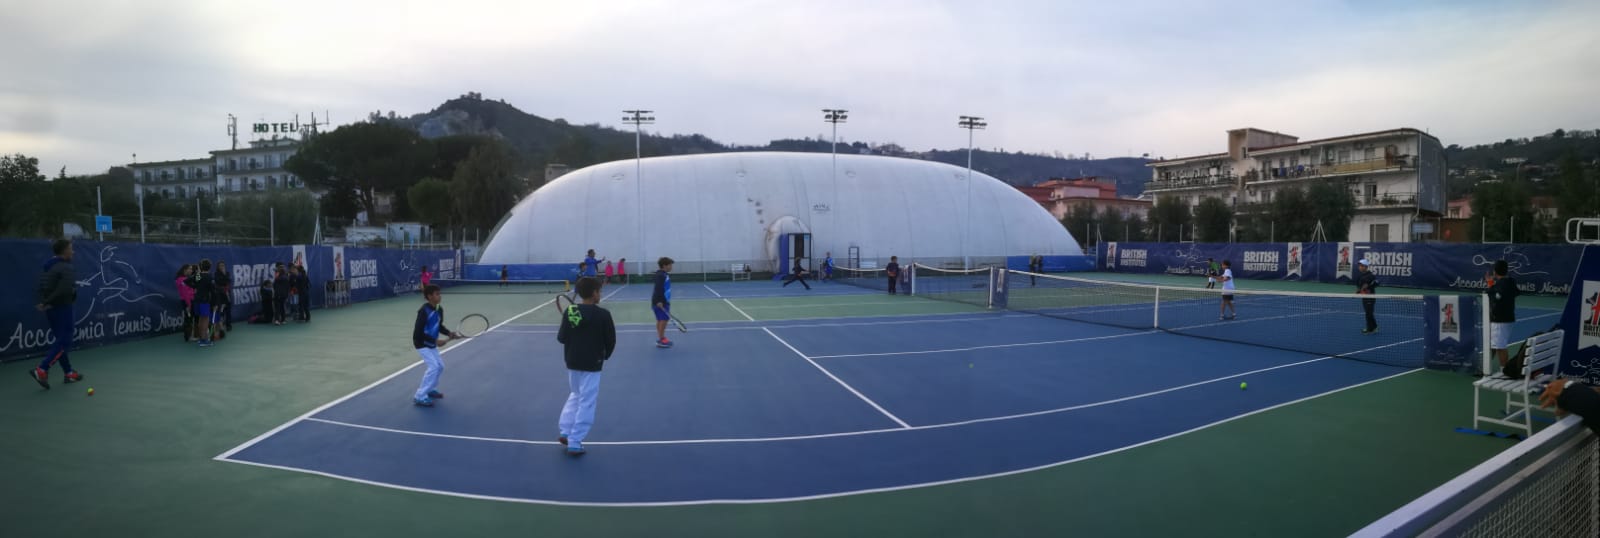 Tre allievi dell’Accademia Tennis Napoli convocati al CAP regionale under 12 di domani: Antonio De Cristofaro, Lorenzo De Martino e Davide Sarnella